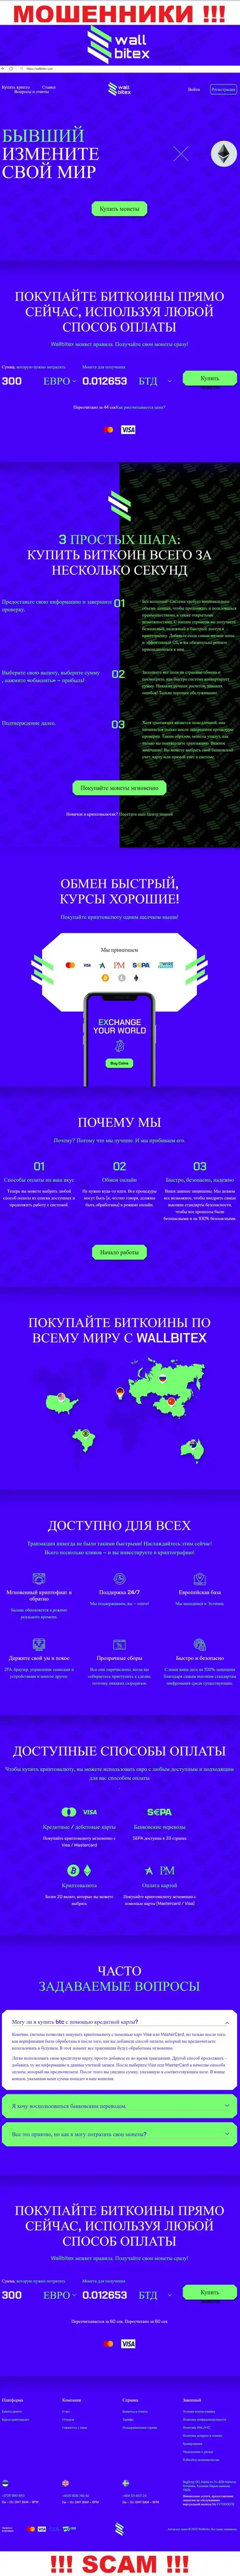 WallBitex Com - это официальный web-сайт противоправно действующей конторы Валл Битекс